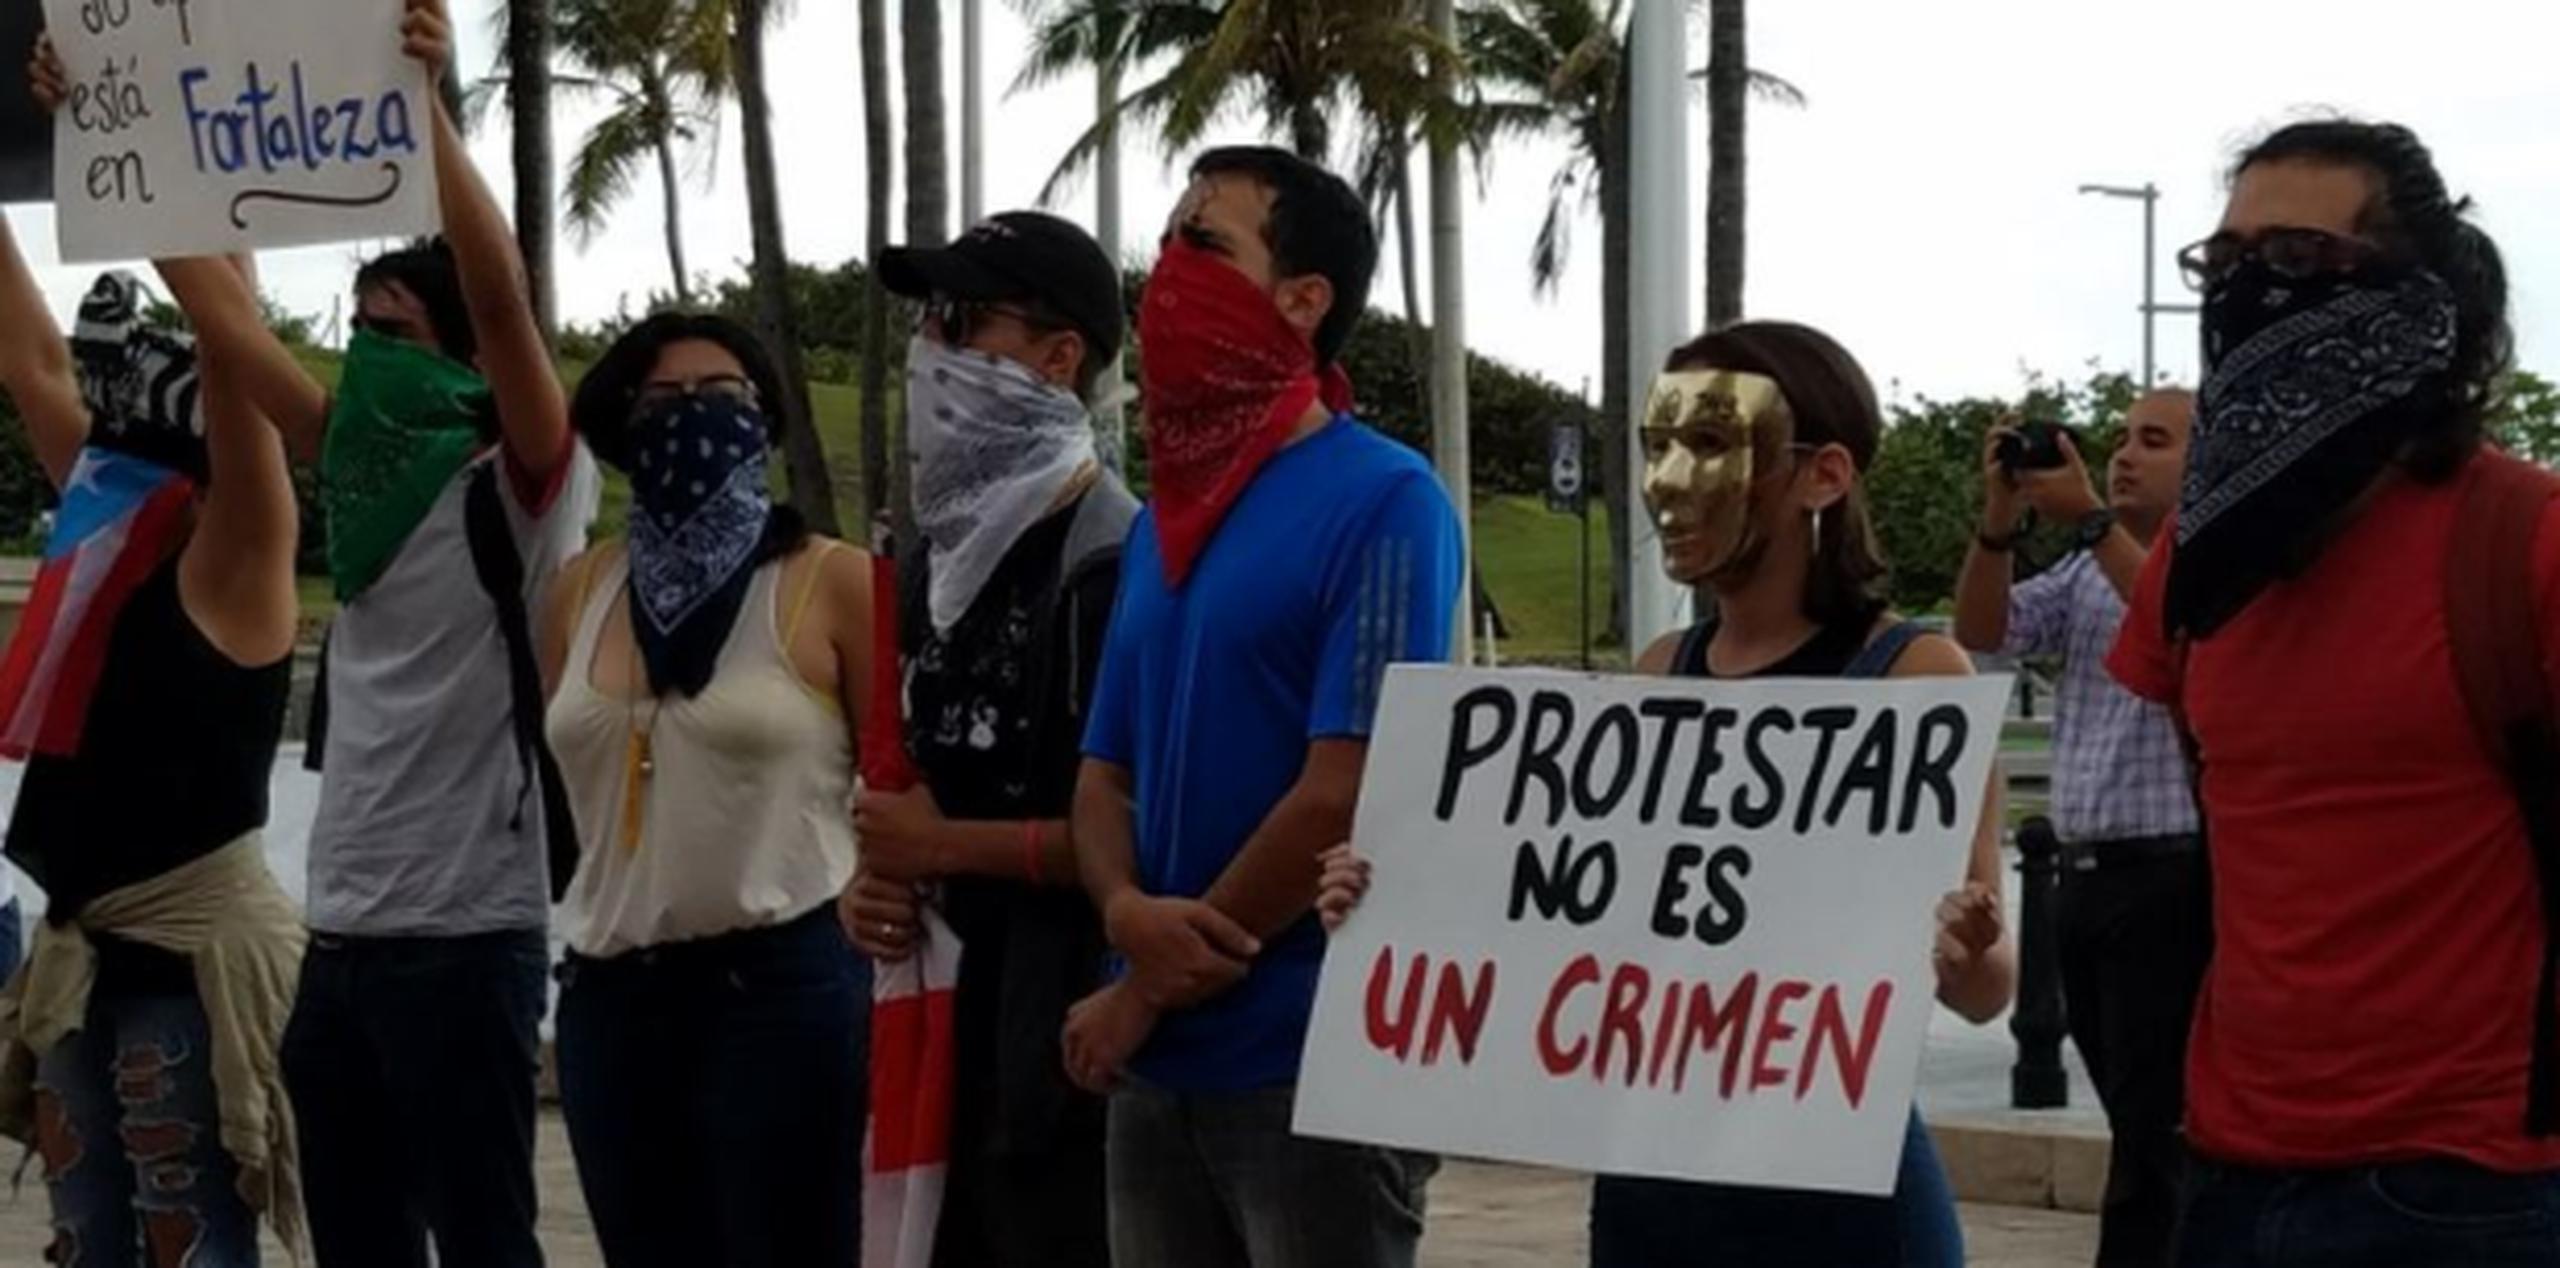 Algunos estudiantes, que portan cartelones con diferentes mensajes, como “Protestar no es un crimen”, llevan su rostro totalmente cubierto, o con antifaces, mientras que varios optaron por llevarlos pintados. (Twitter / Nydia Bauzá)